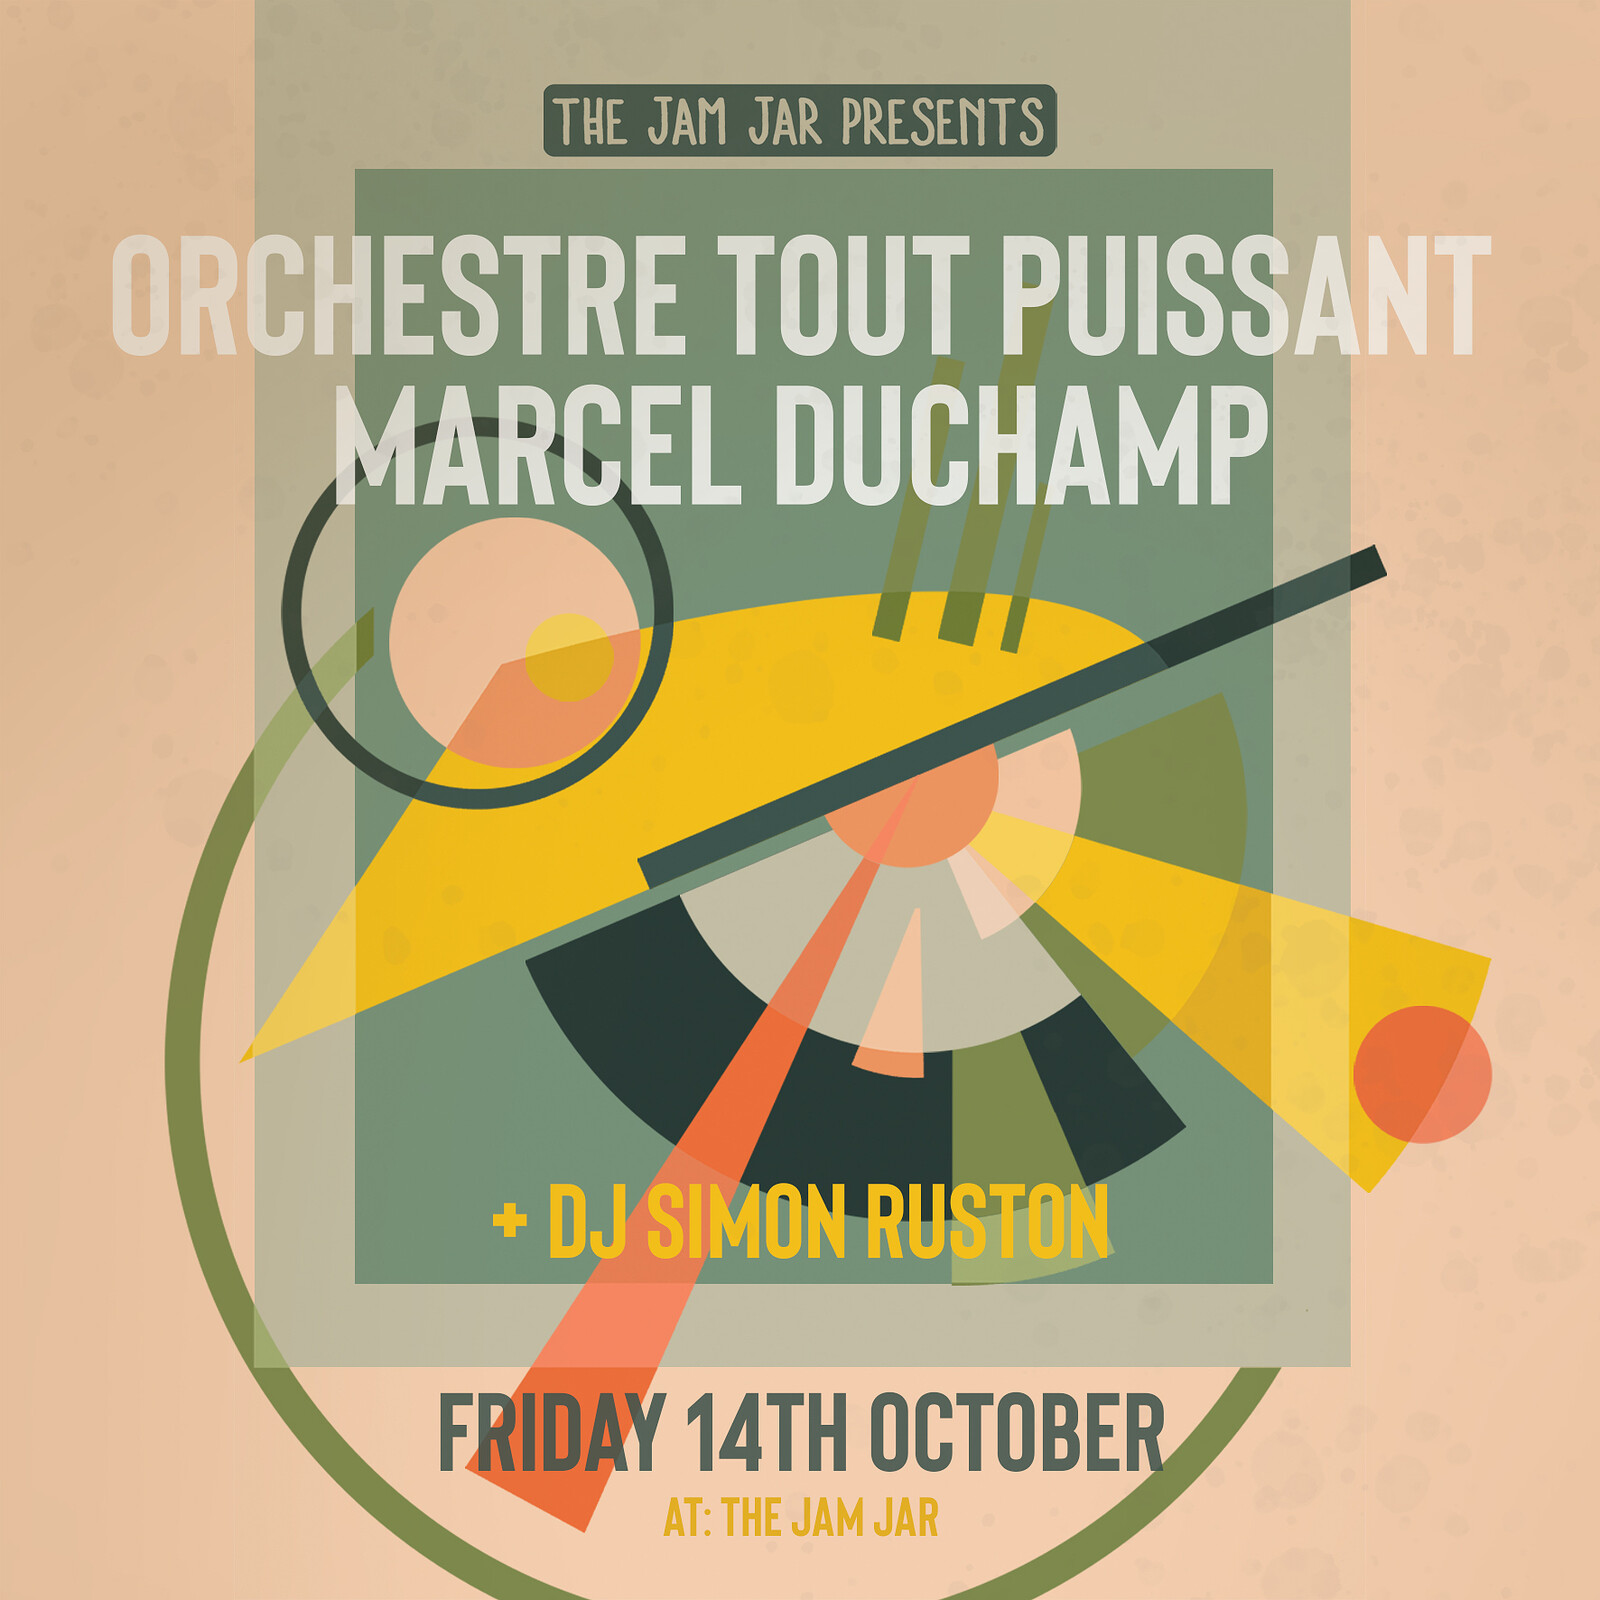 Orchestre Tout Puissant Marcel Duchamp at The Jam Jar